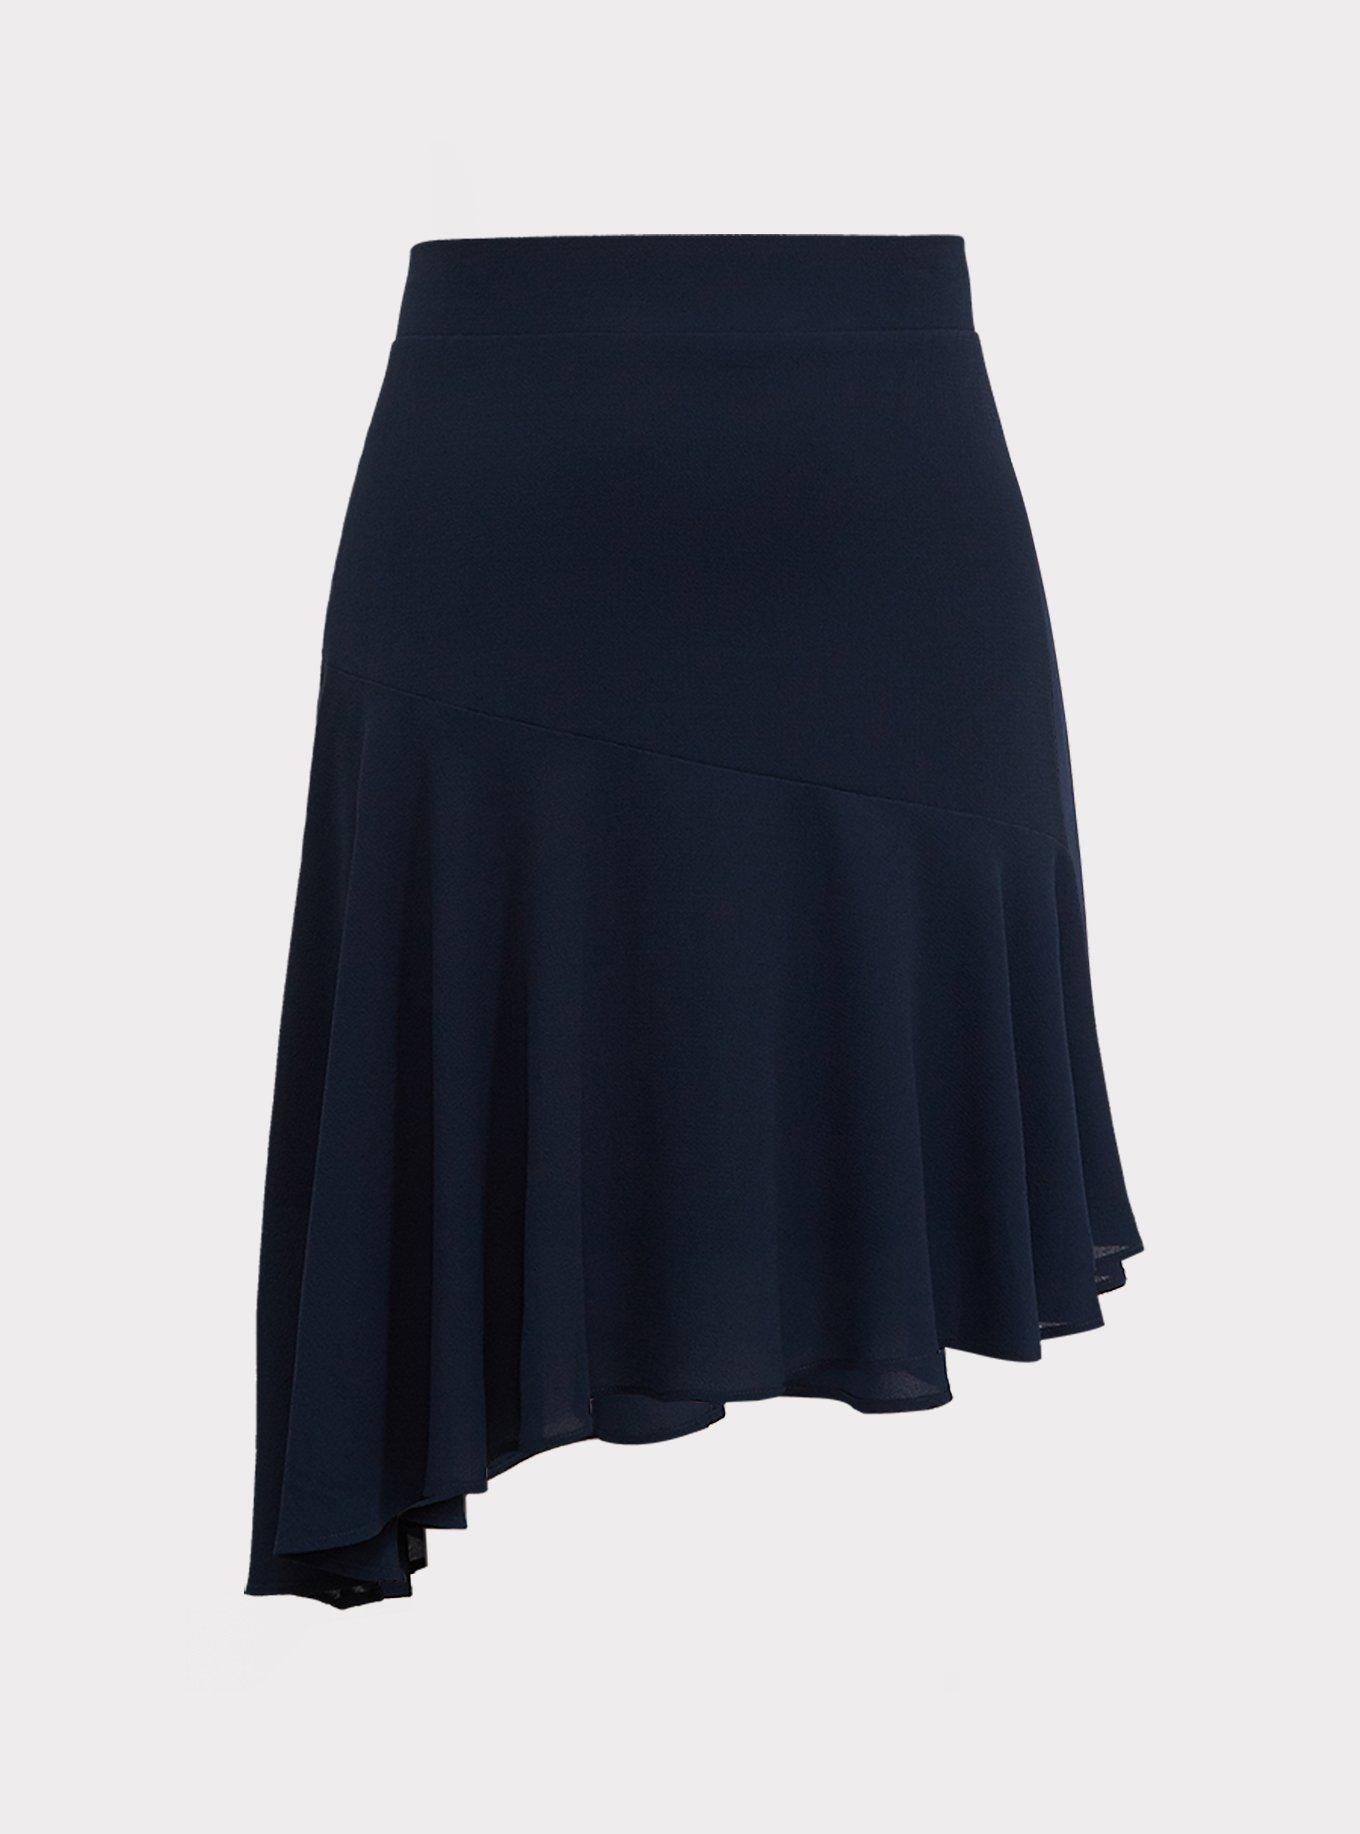 Plus Size - Navy Crepe Asymmetrical Skirt - Torrid